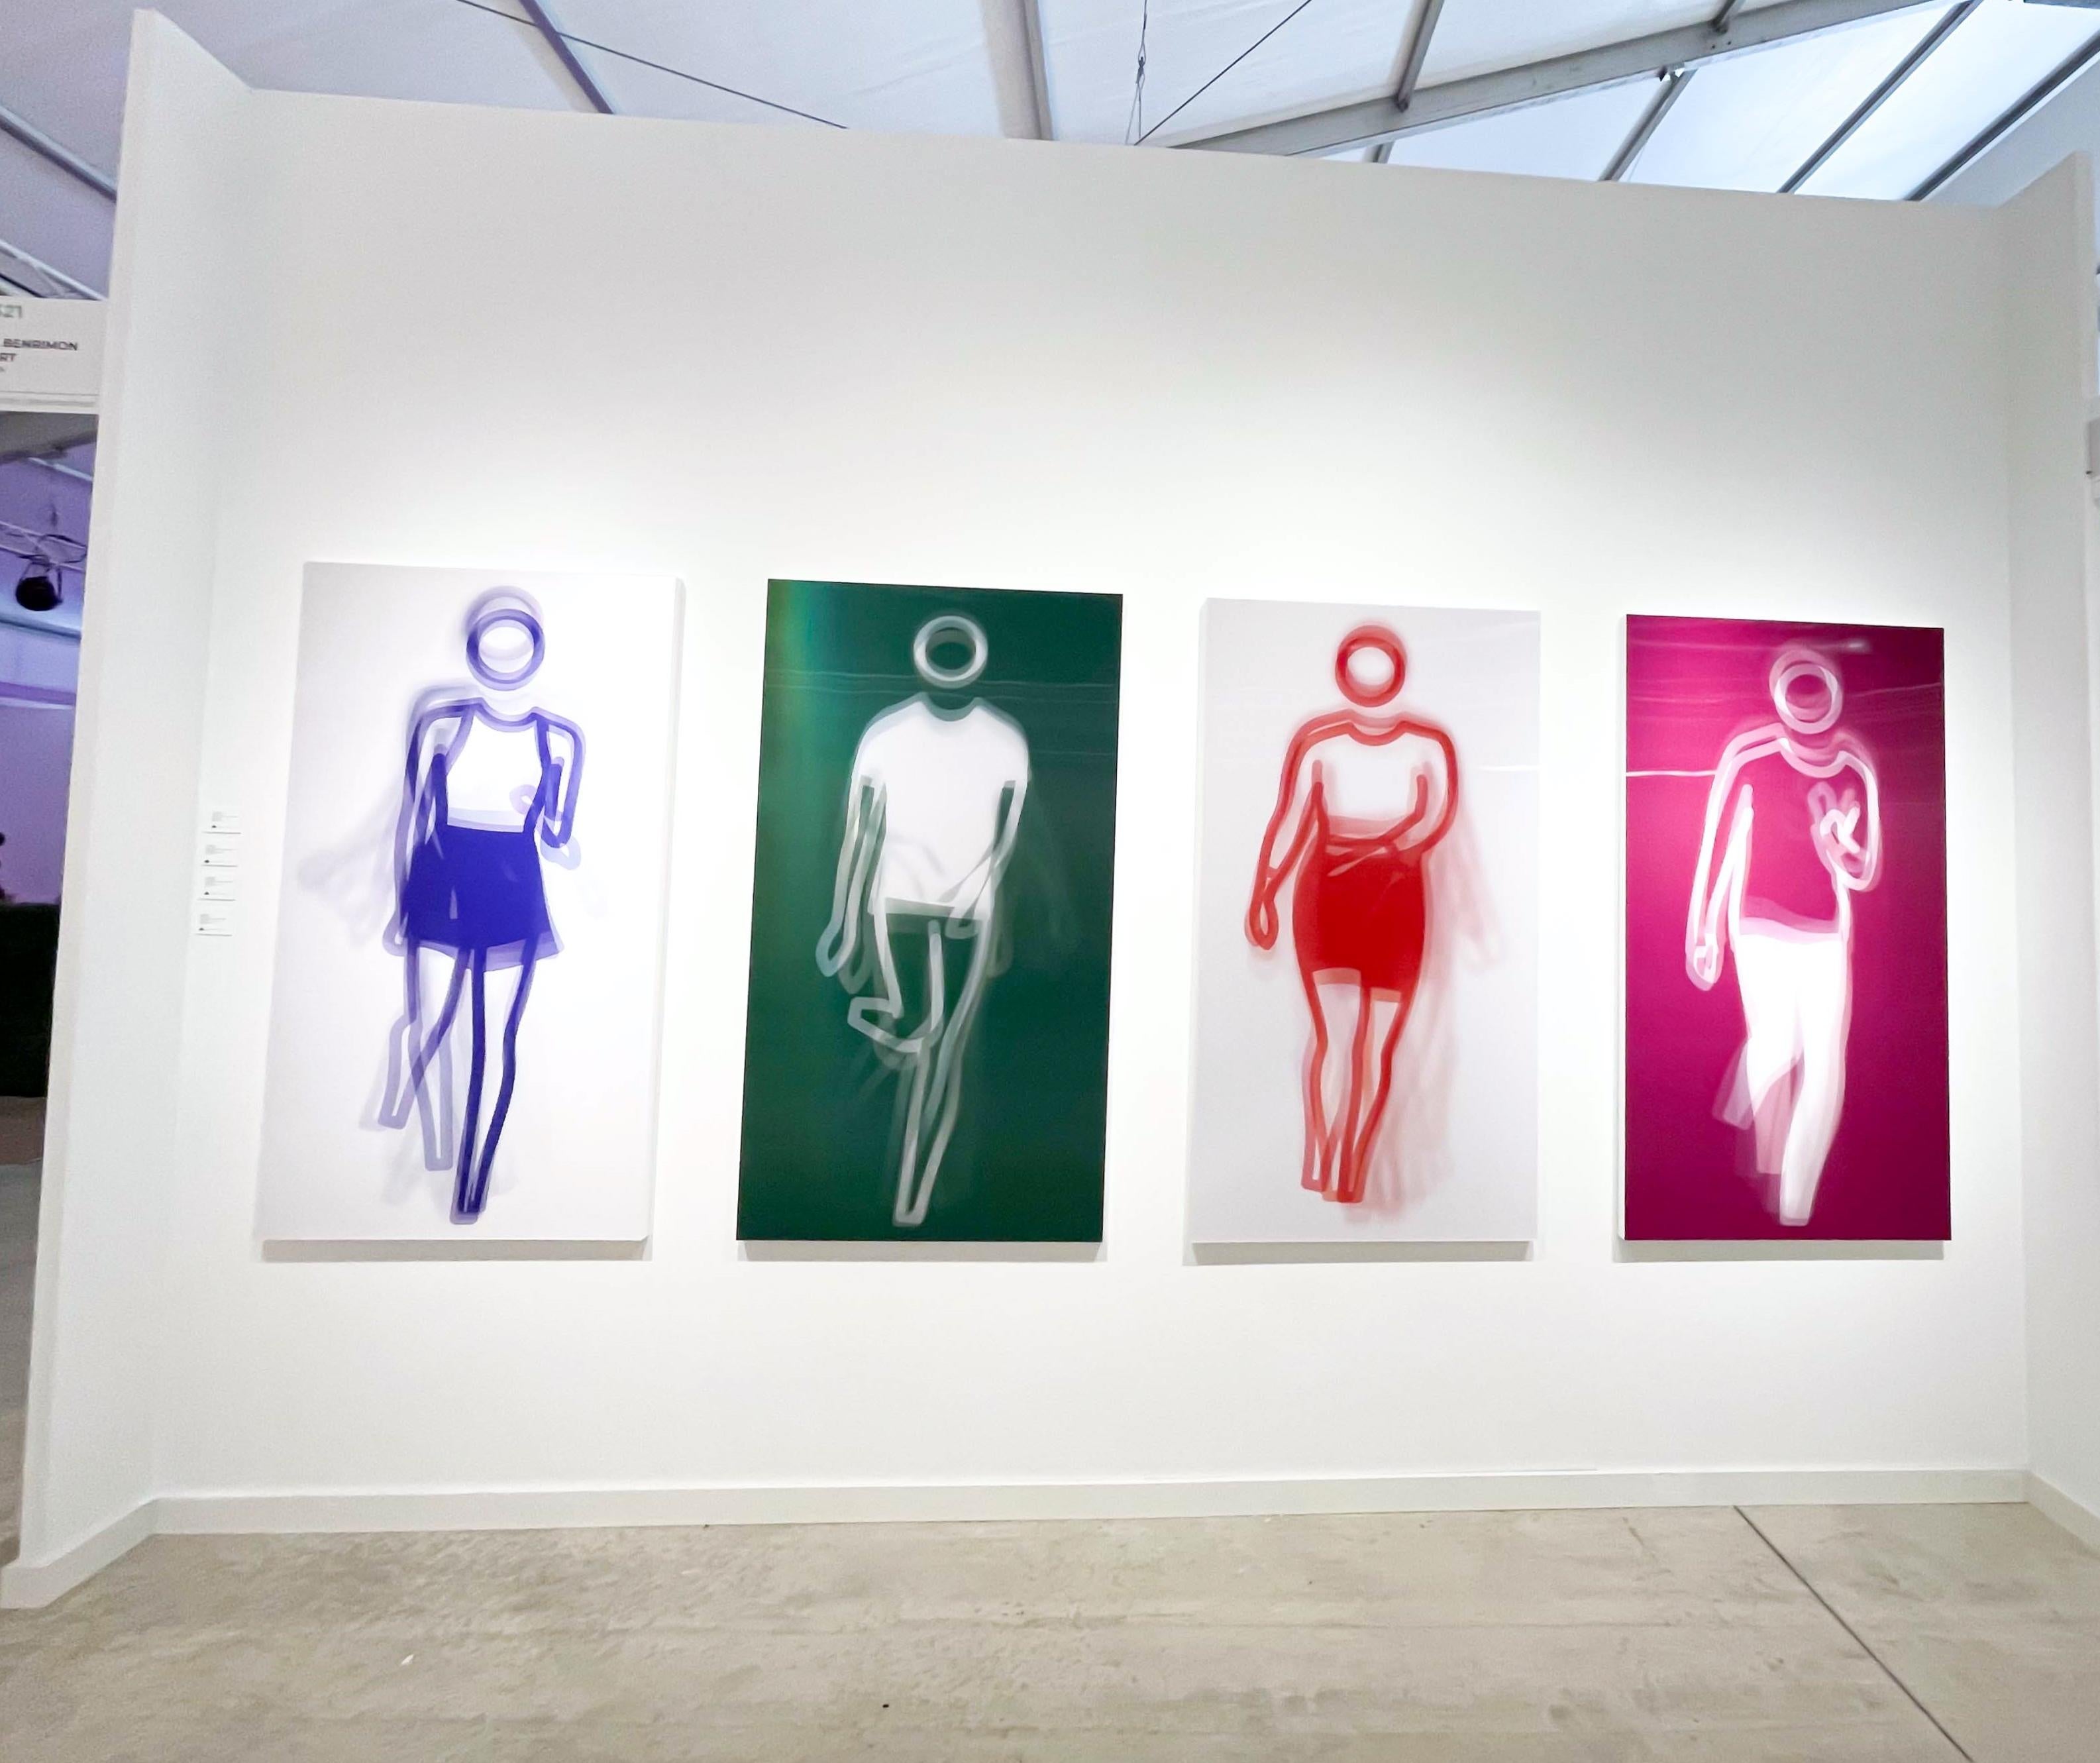 Moving Large Contemporary Acrylic Panel of Dancing Figure, Four Colors, Dance 1 (panneau acrylique contemporain de grande taille représentant une figure dansante)  - Print de Julian Opie